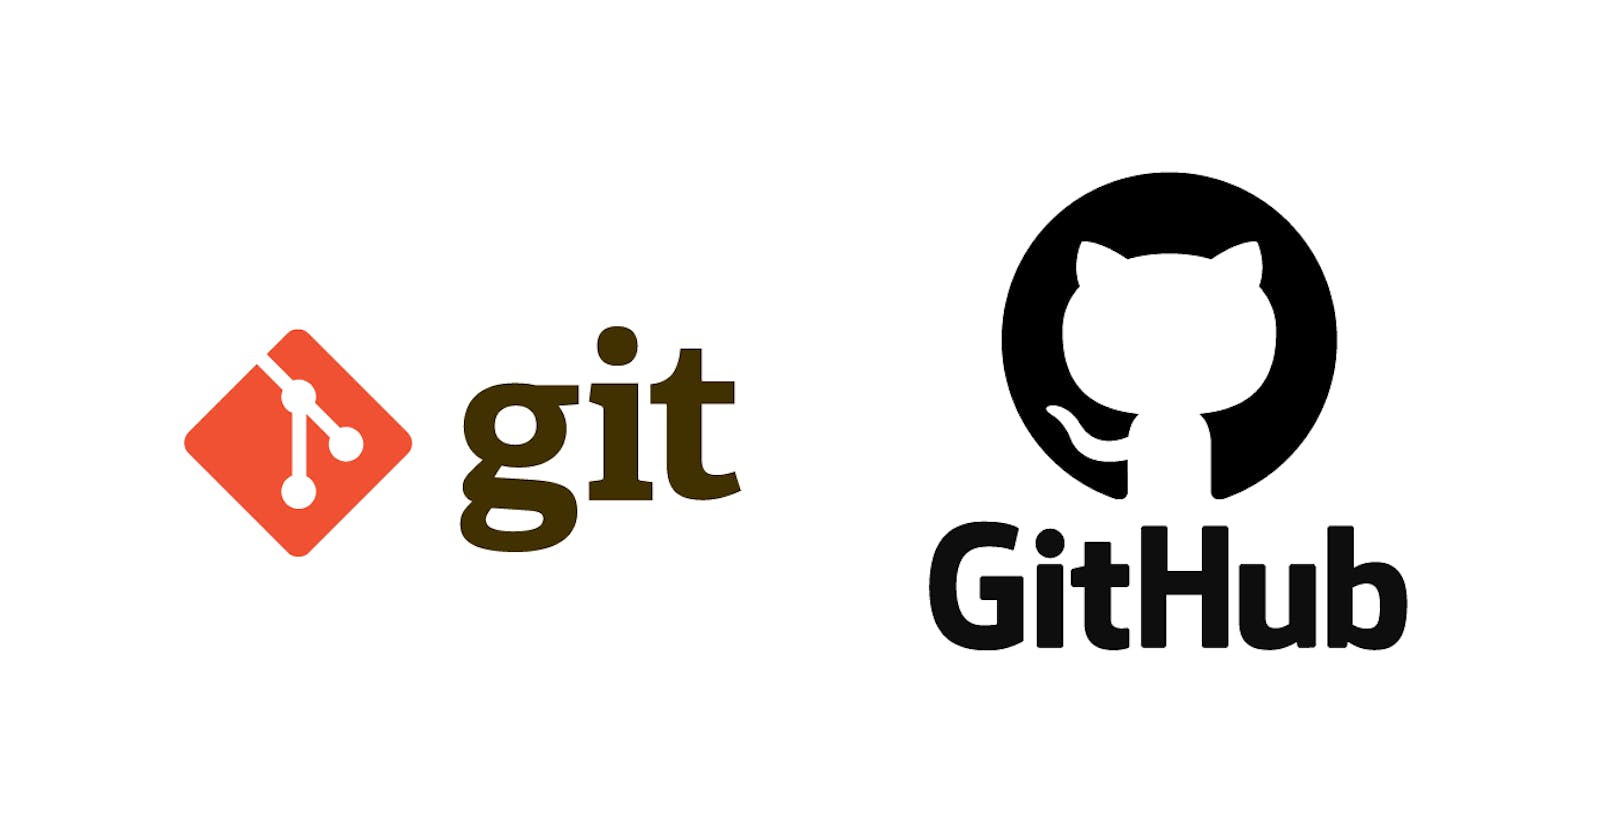 Git & GitHub - CheatSheet

Push your code fast !!!